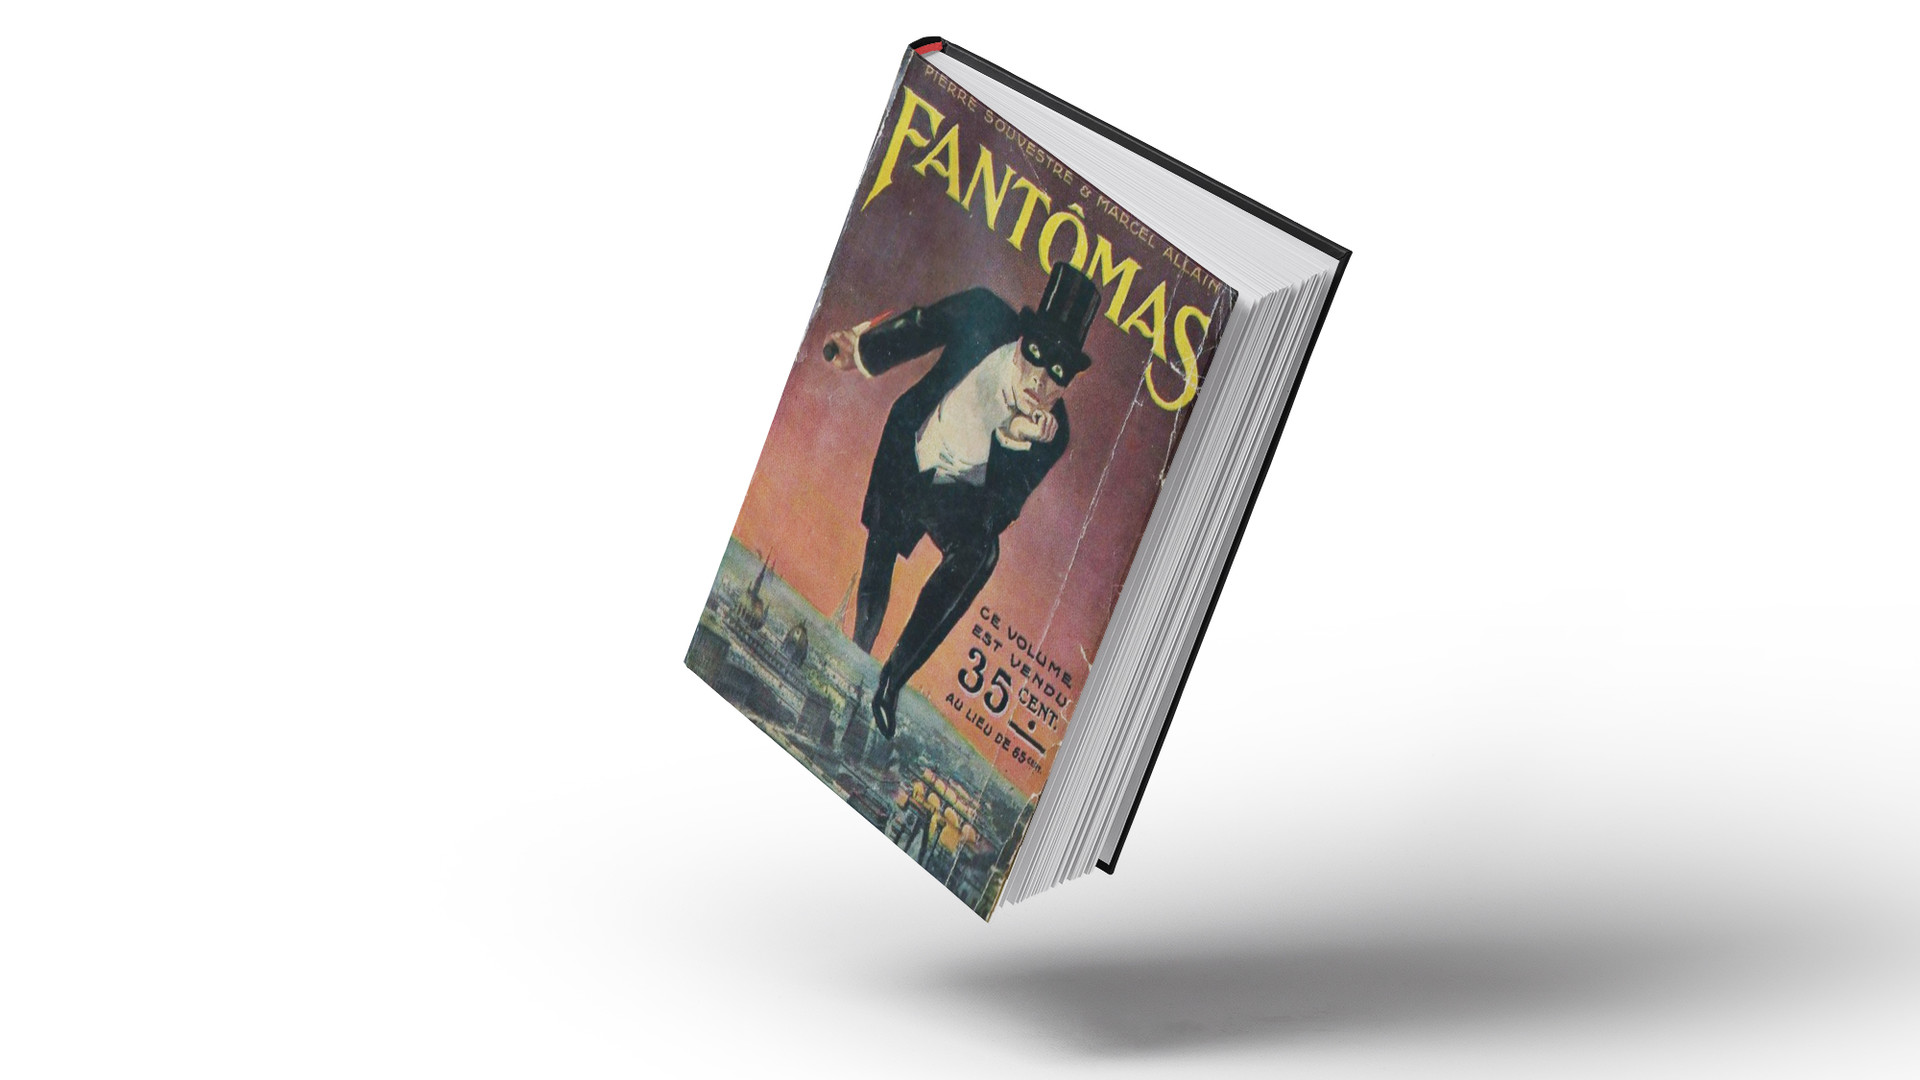 El personaje de Fantômas apareció por primera vez en los libros de los franceses Marcel Allain y Pierre Souvestre.